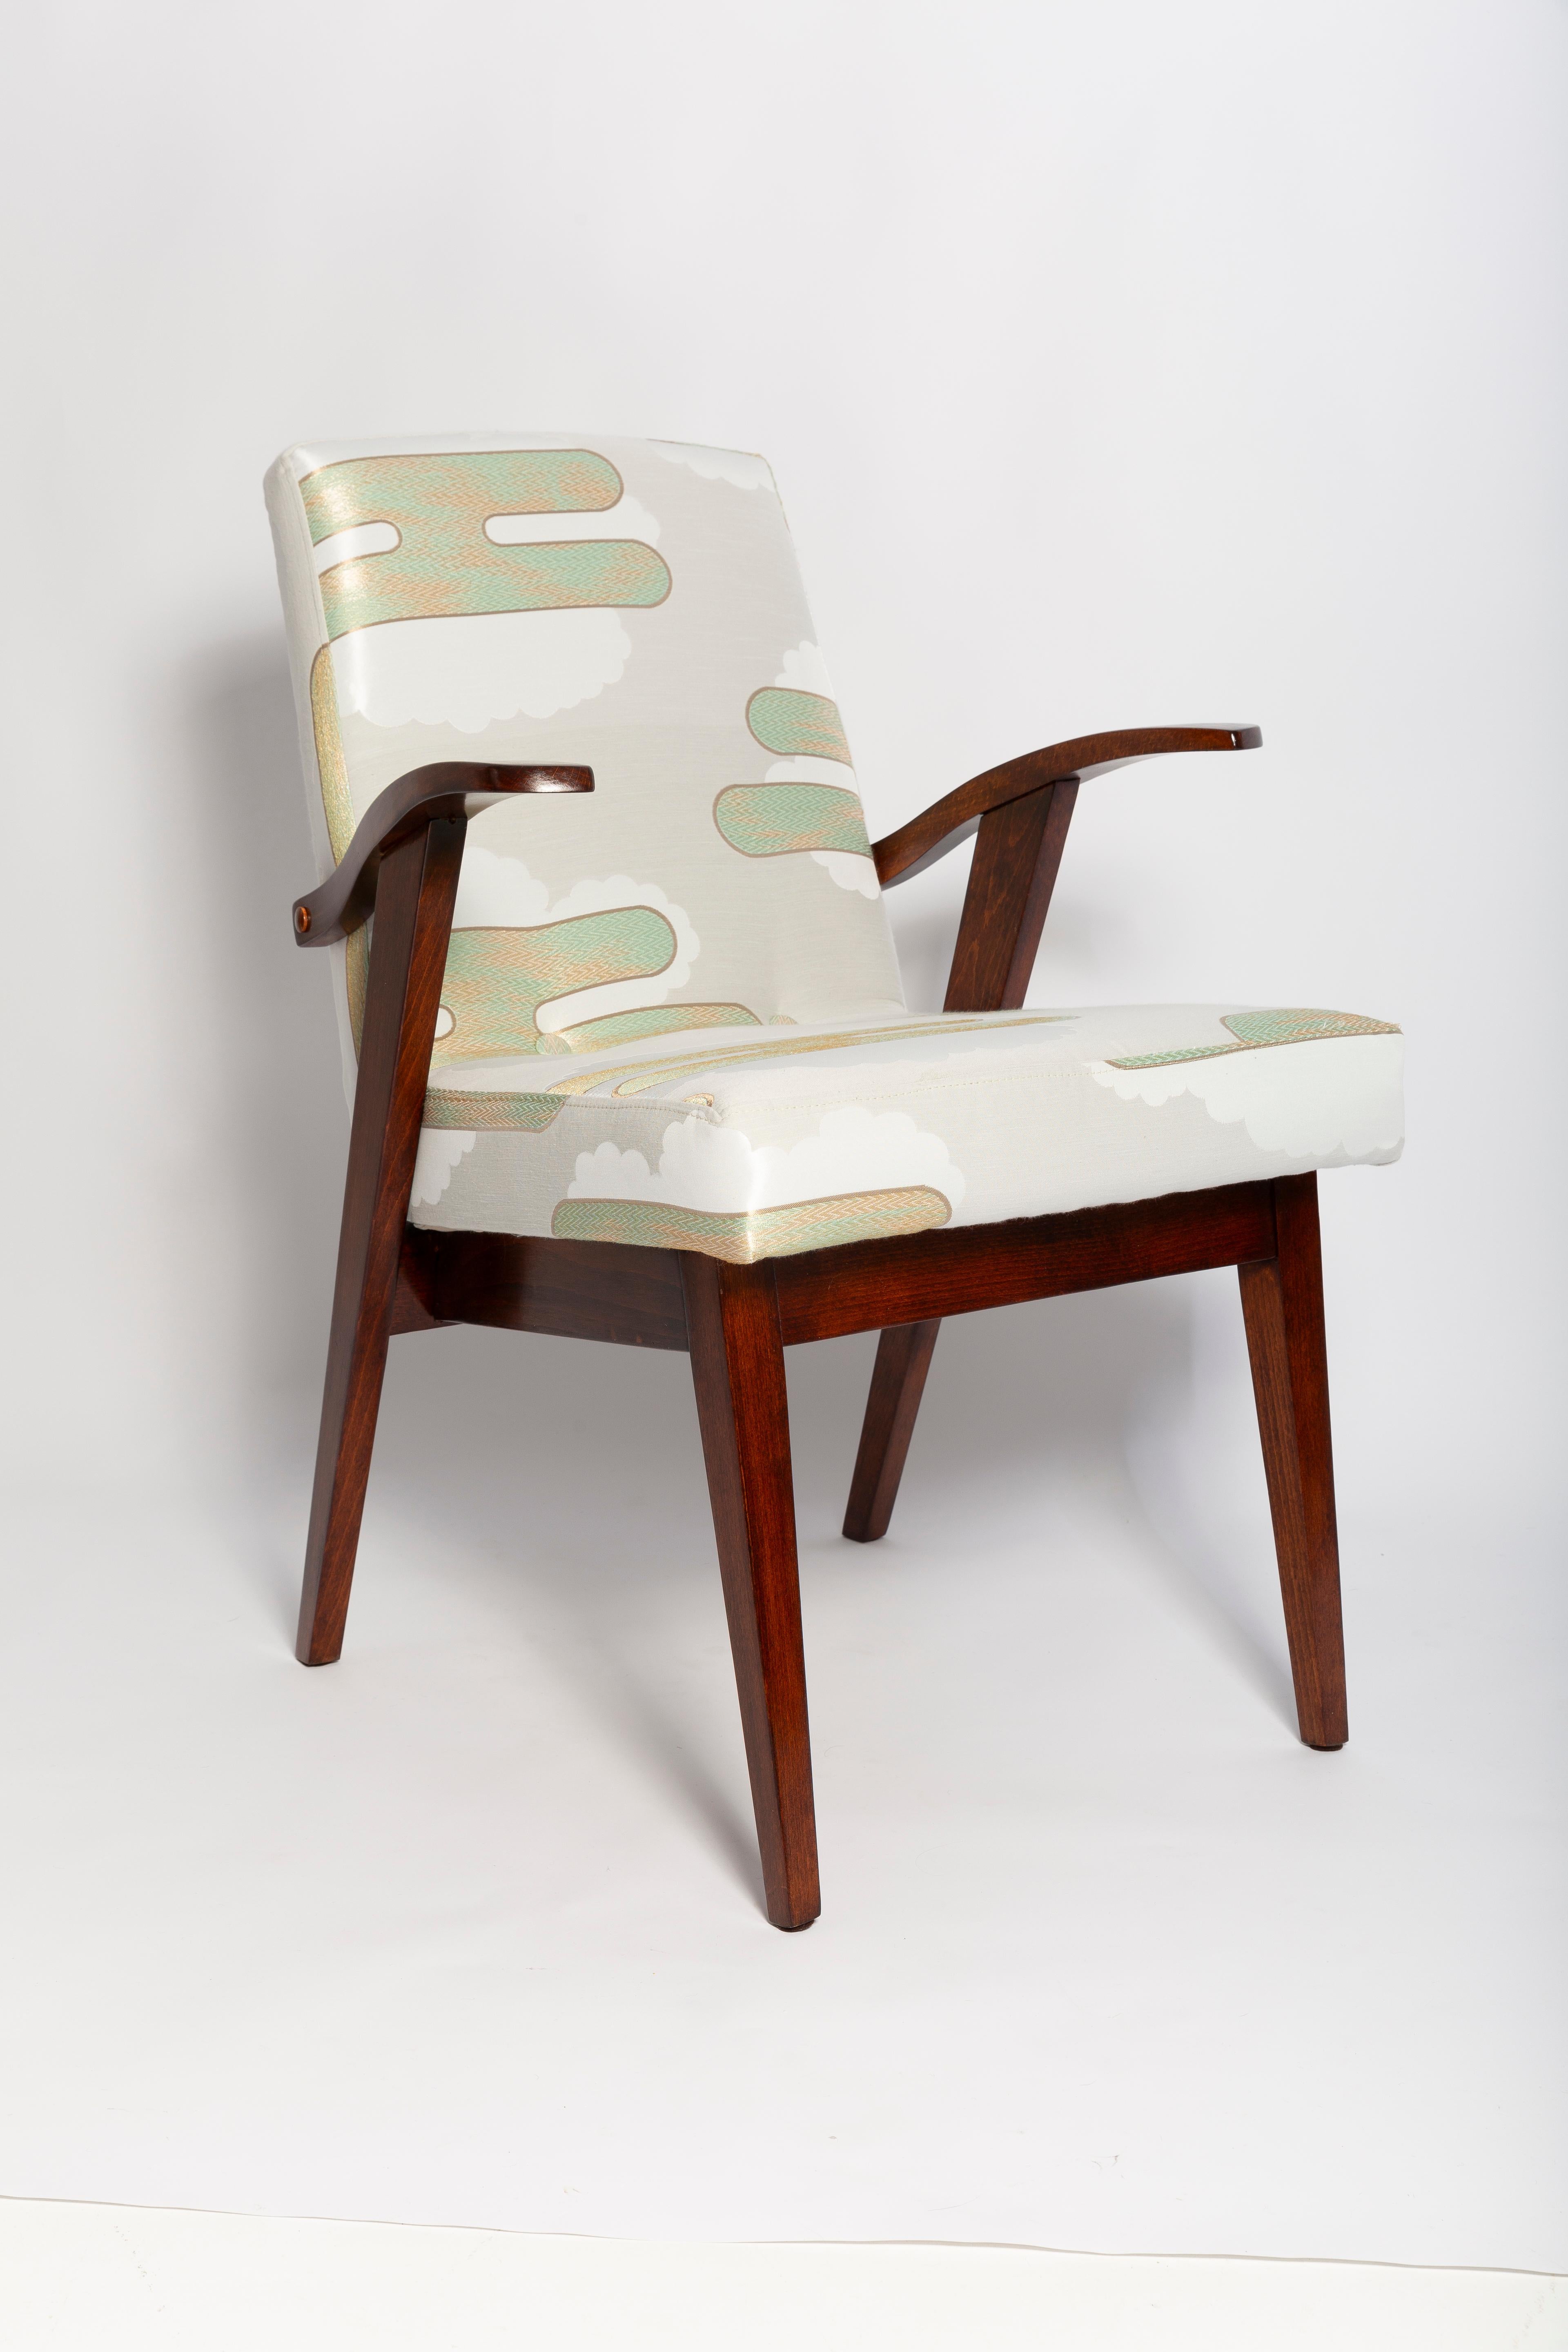 Sessel entworfen von Mieczyslaw Puchala. Dunkelbraunes Holz in Kombination mit einem mintgrünen, wunderschönen italienischen Jacquard verleiht ihm Eleganz und Noblesse. 

Der Stuhl wurde einer kompletten Tischler- und Polstermöbelrenovierung